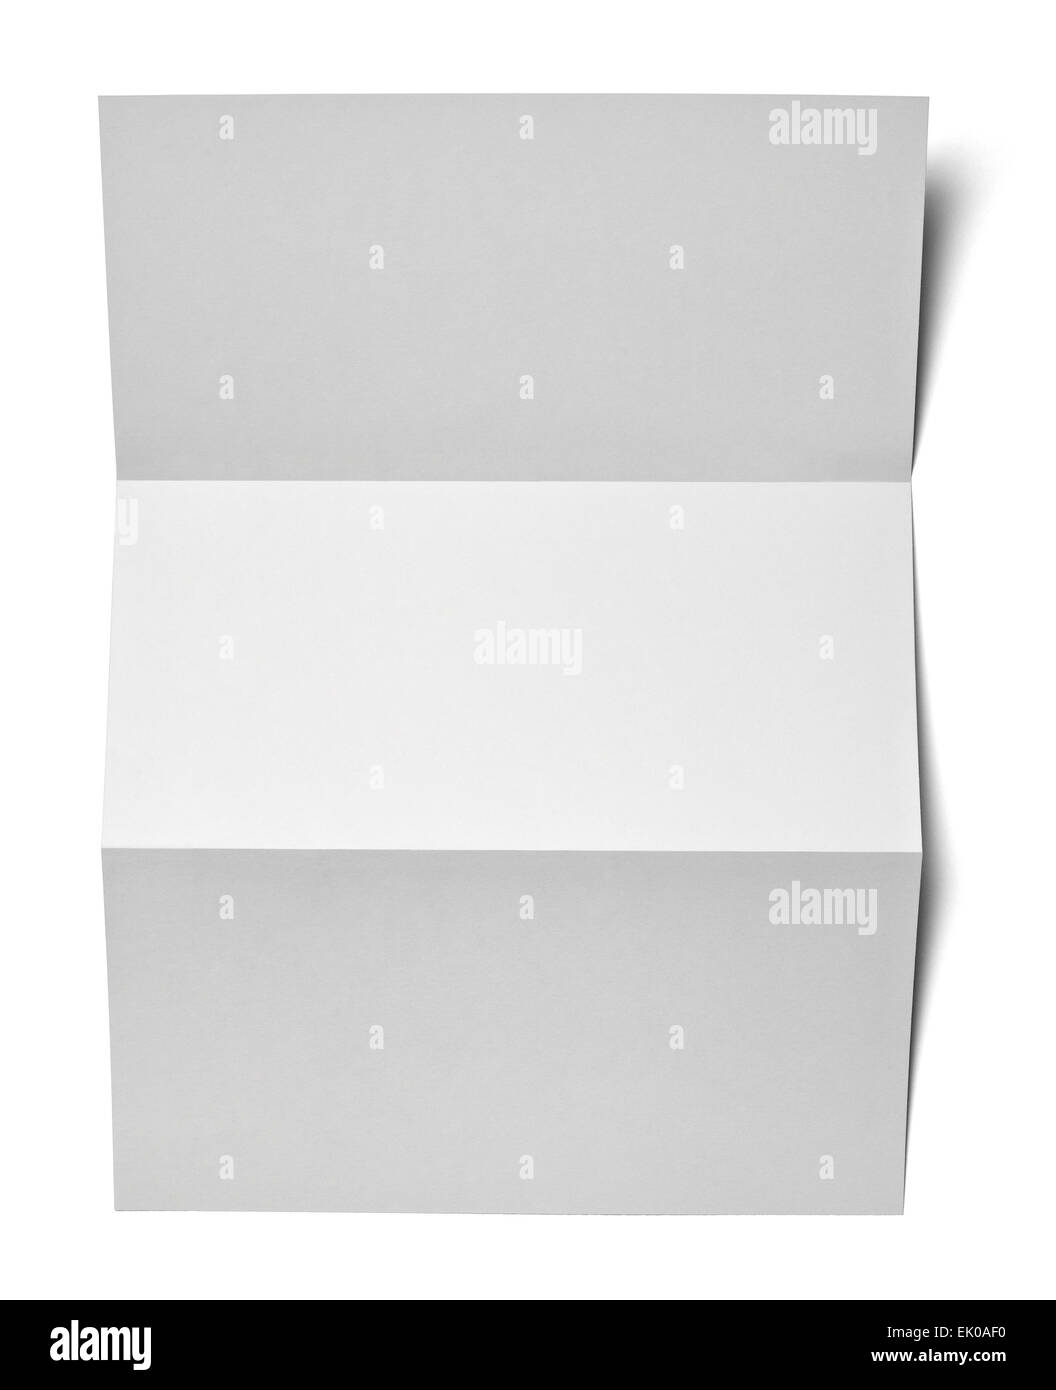 Collection de divers livre blanc en blanc sur fond blanc avec clipping path Banque D'Images